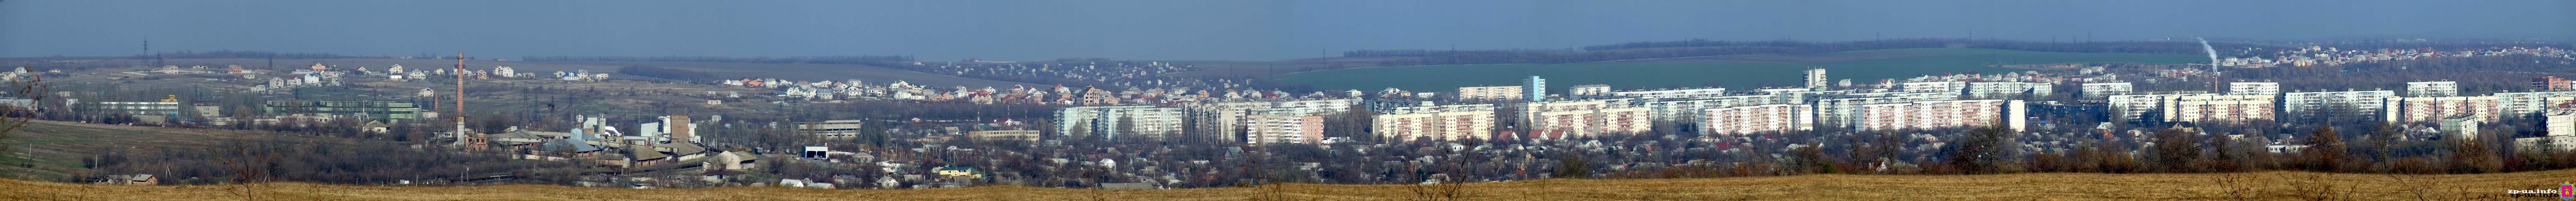 Панорама - вид на северо-западную часть Запорожья